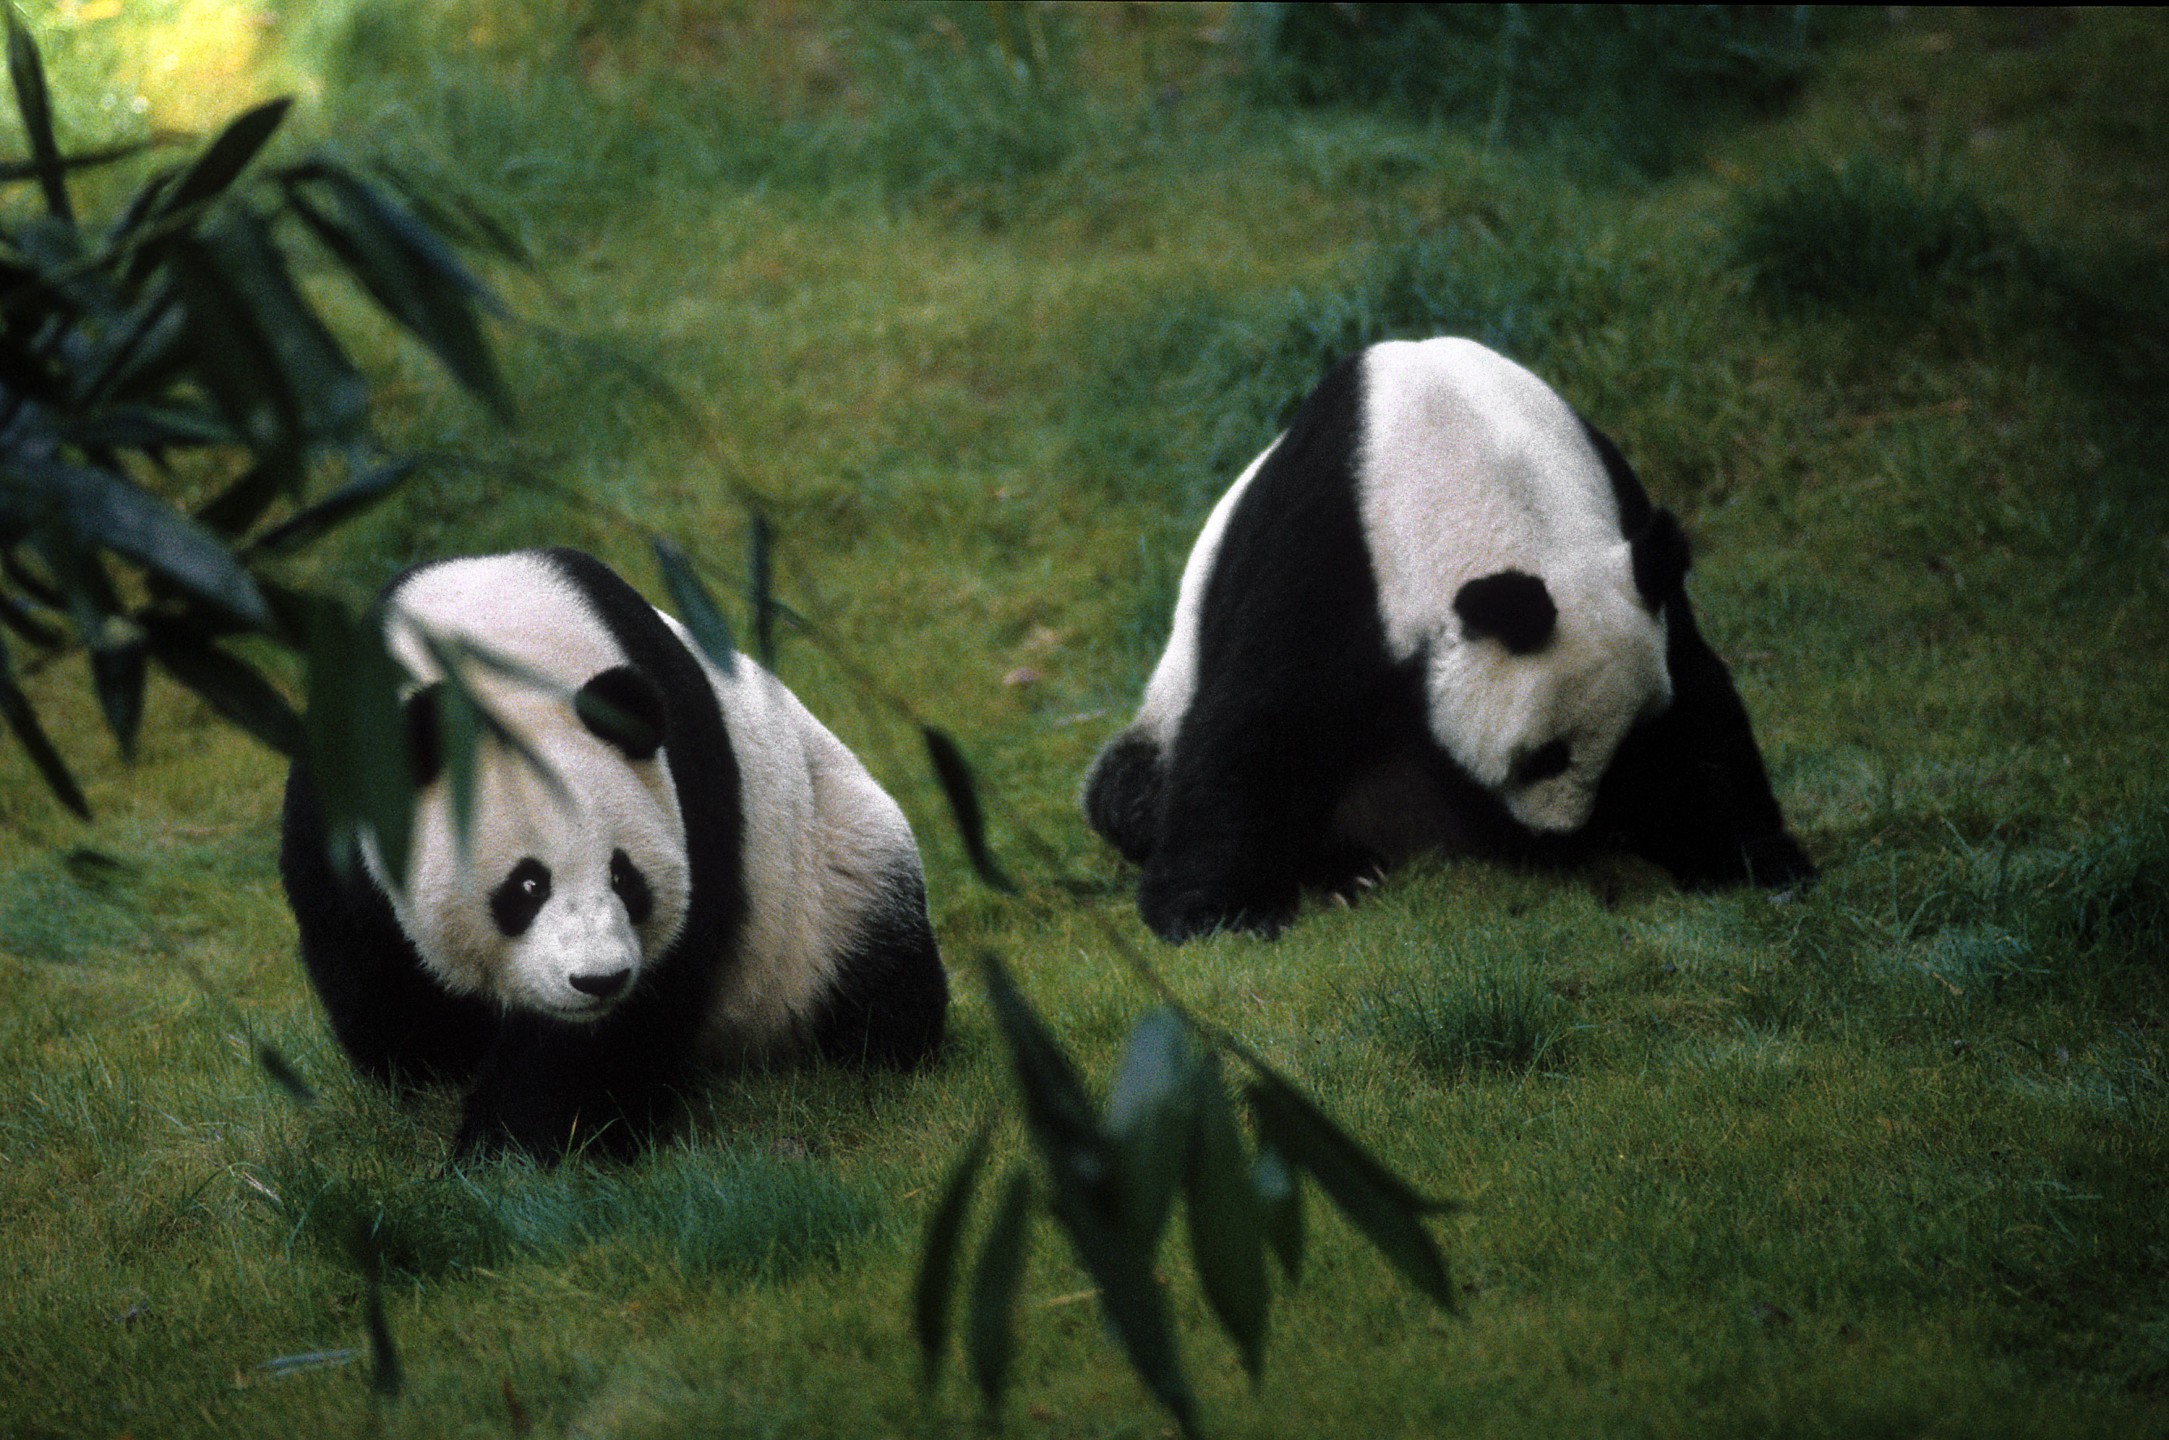 Bai Yun and Shi Shi, giant pandas